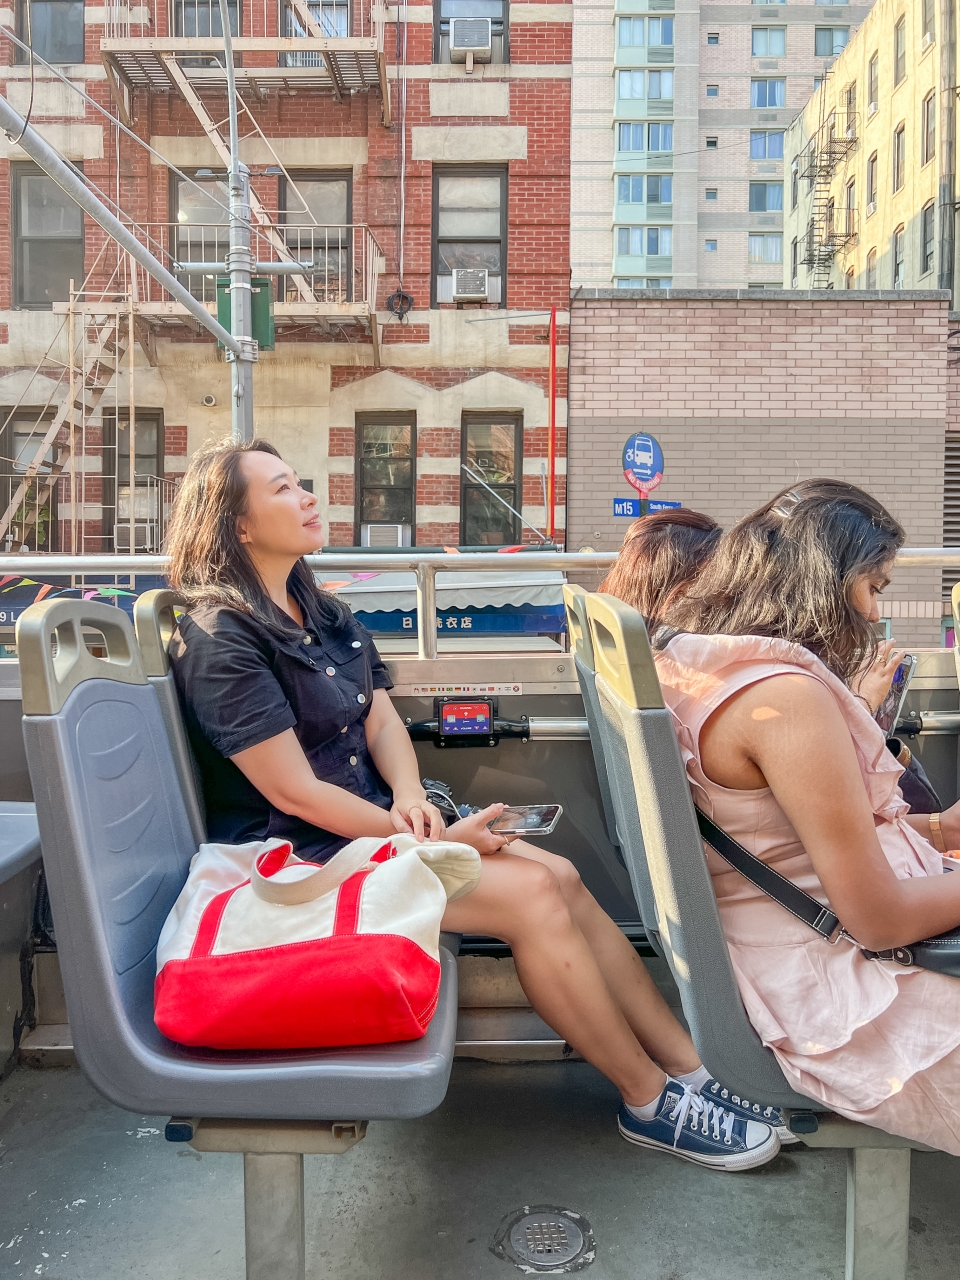 뉴욕 여행 버스투어 비교 : 탑뷰 2층 버스 vs 더라이드